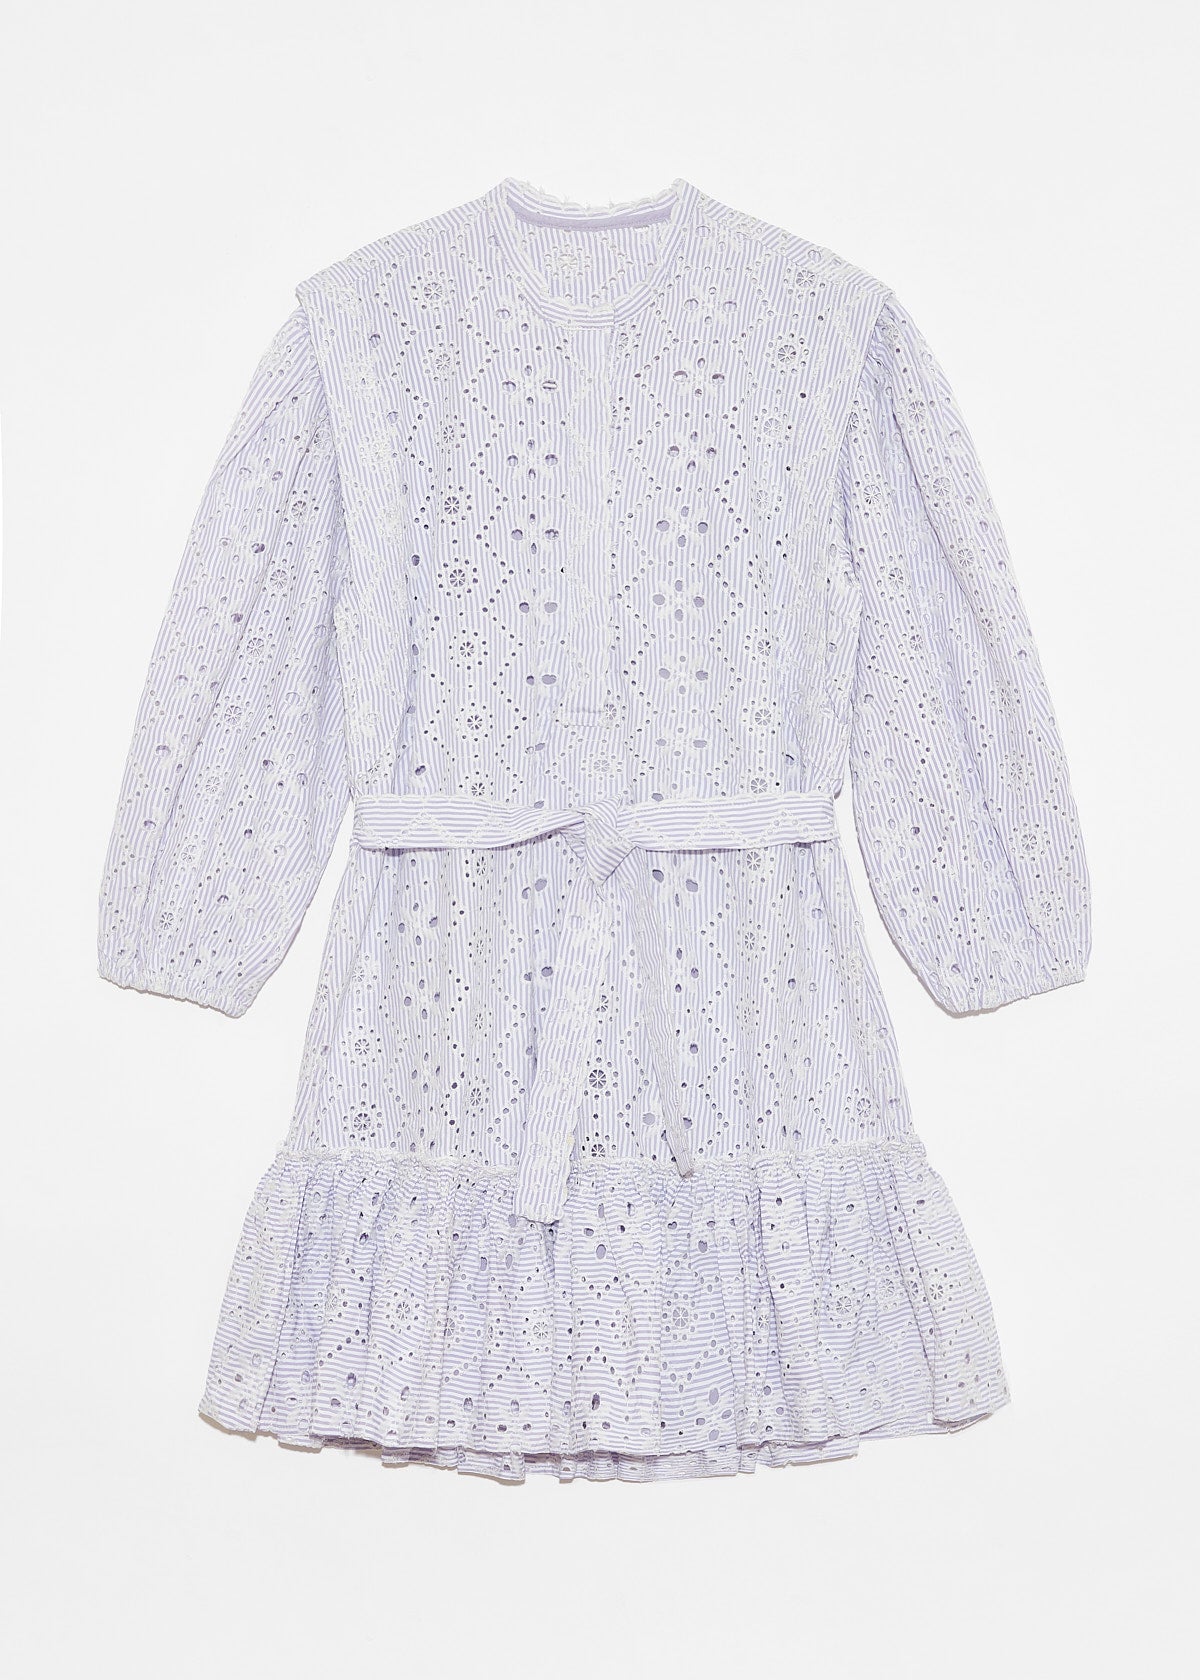 DÈLUC - Cassat Dress - Light Lilac